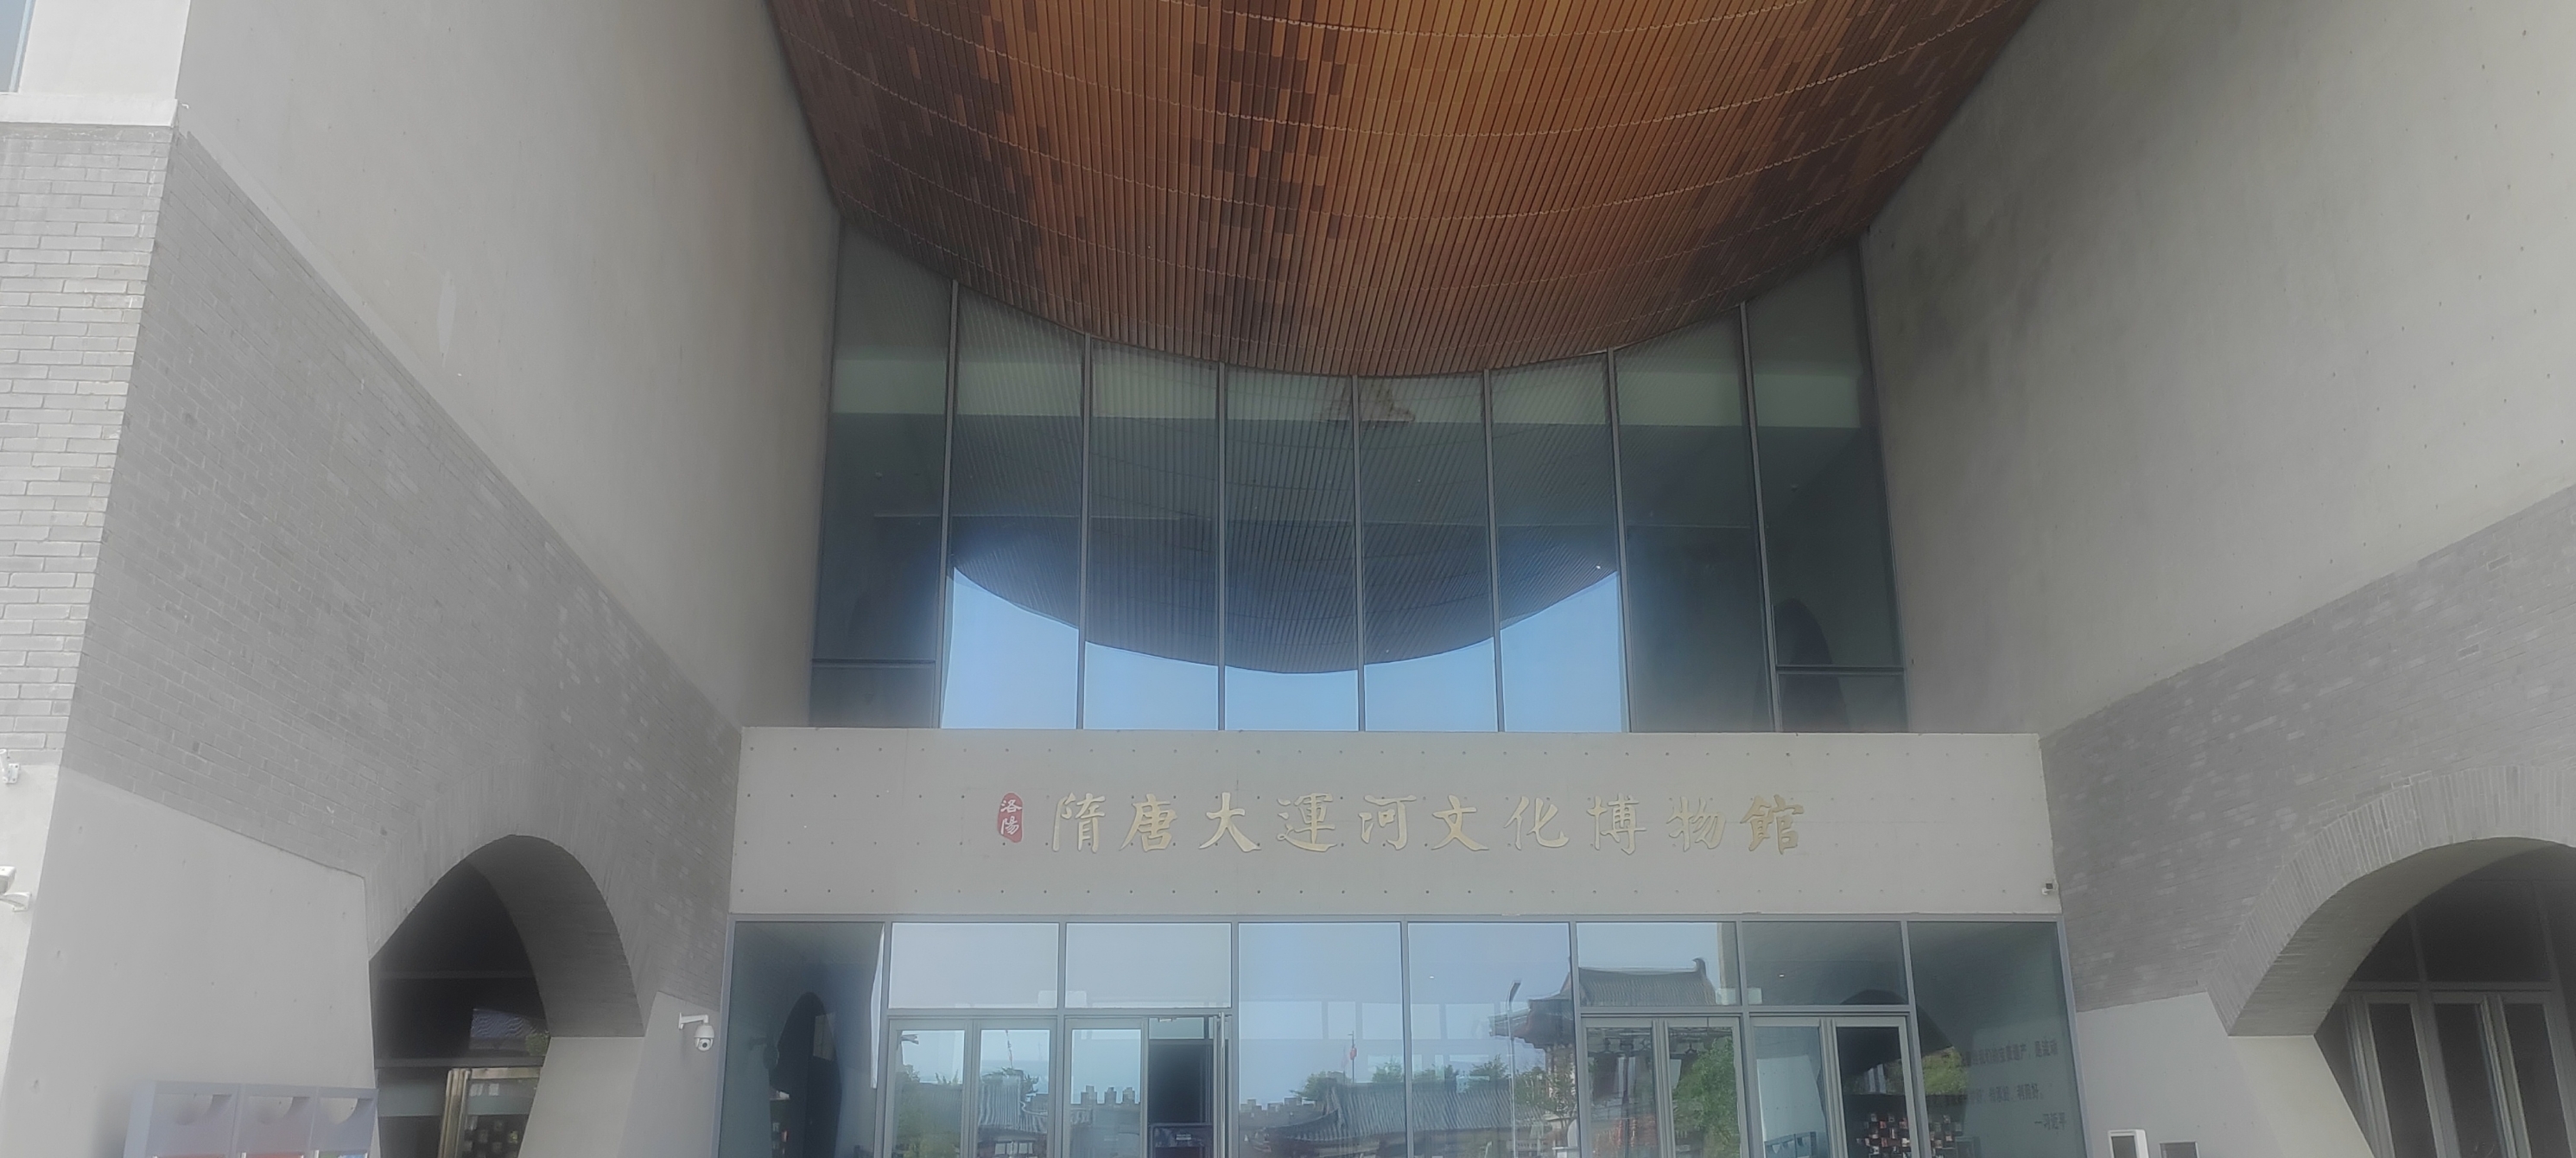 隋唐运河博物馆